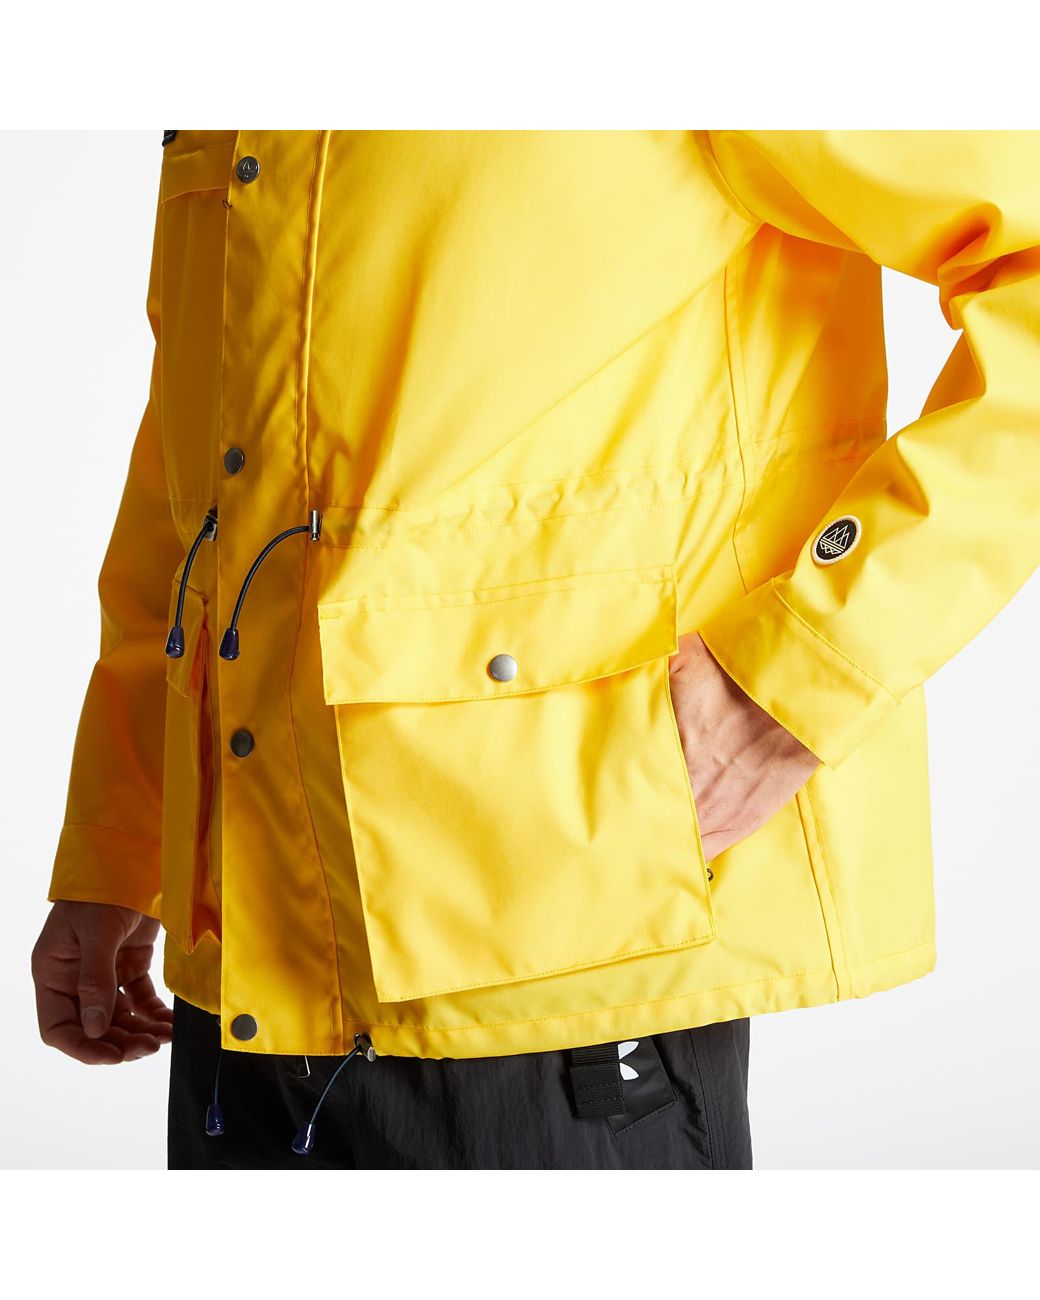 práctico estornudar sonriendo adidas Originals Adidas Spezial Jacket Yellow for Men | Lyst